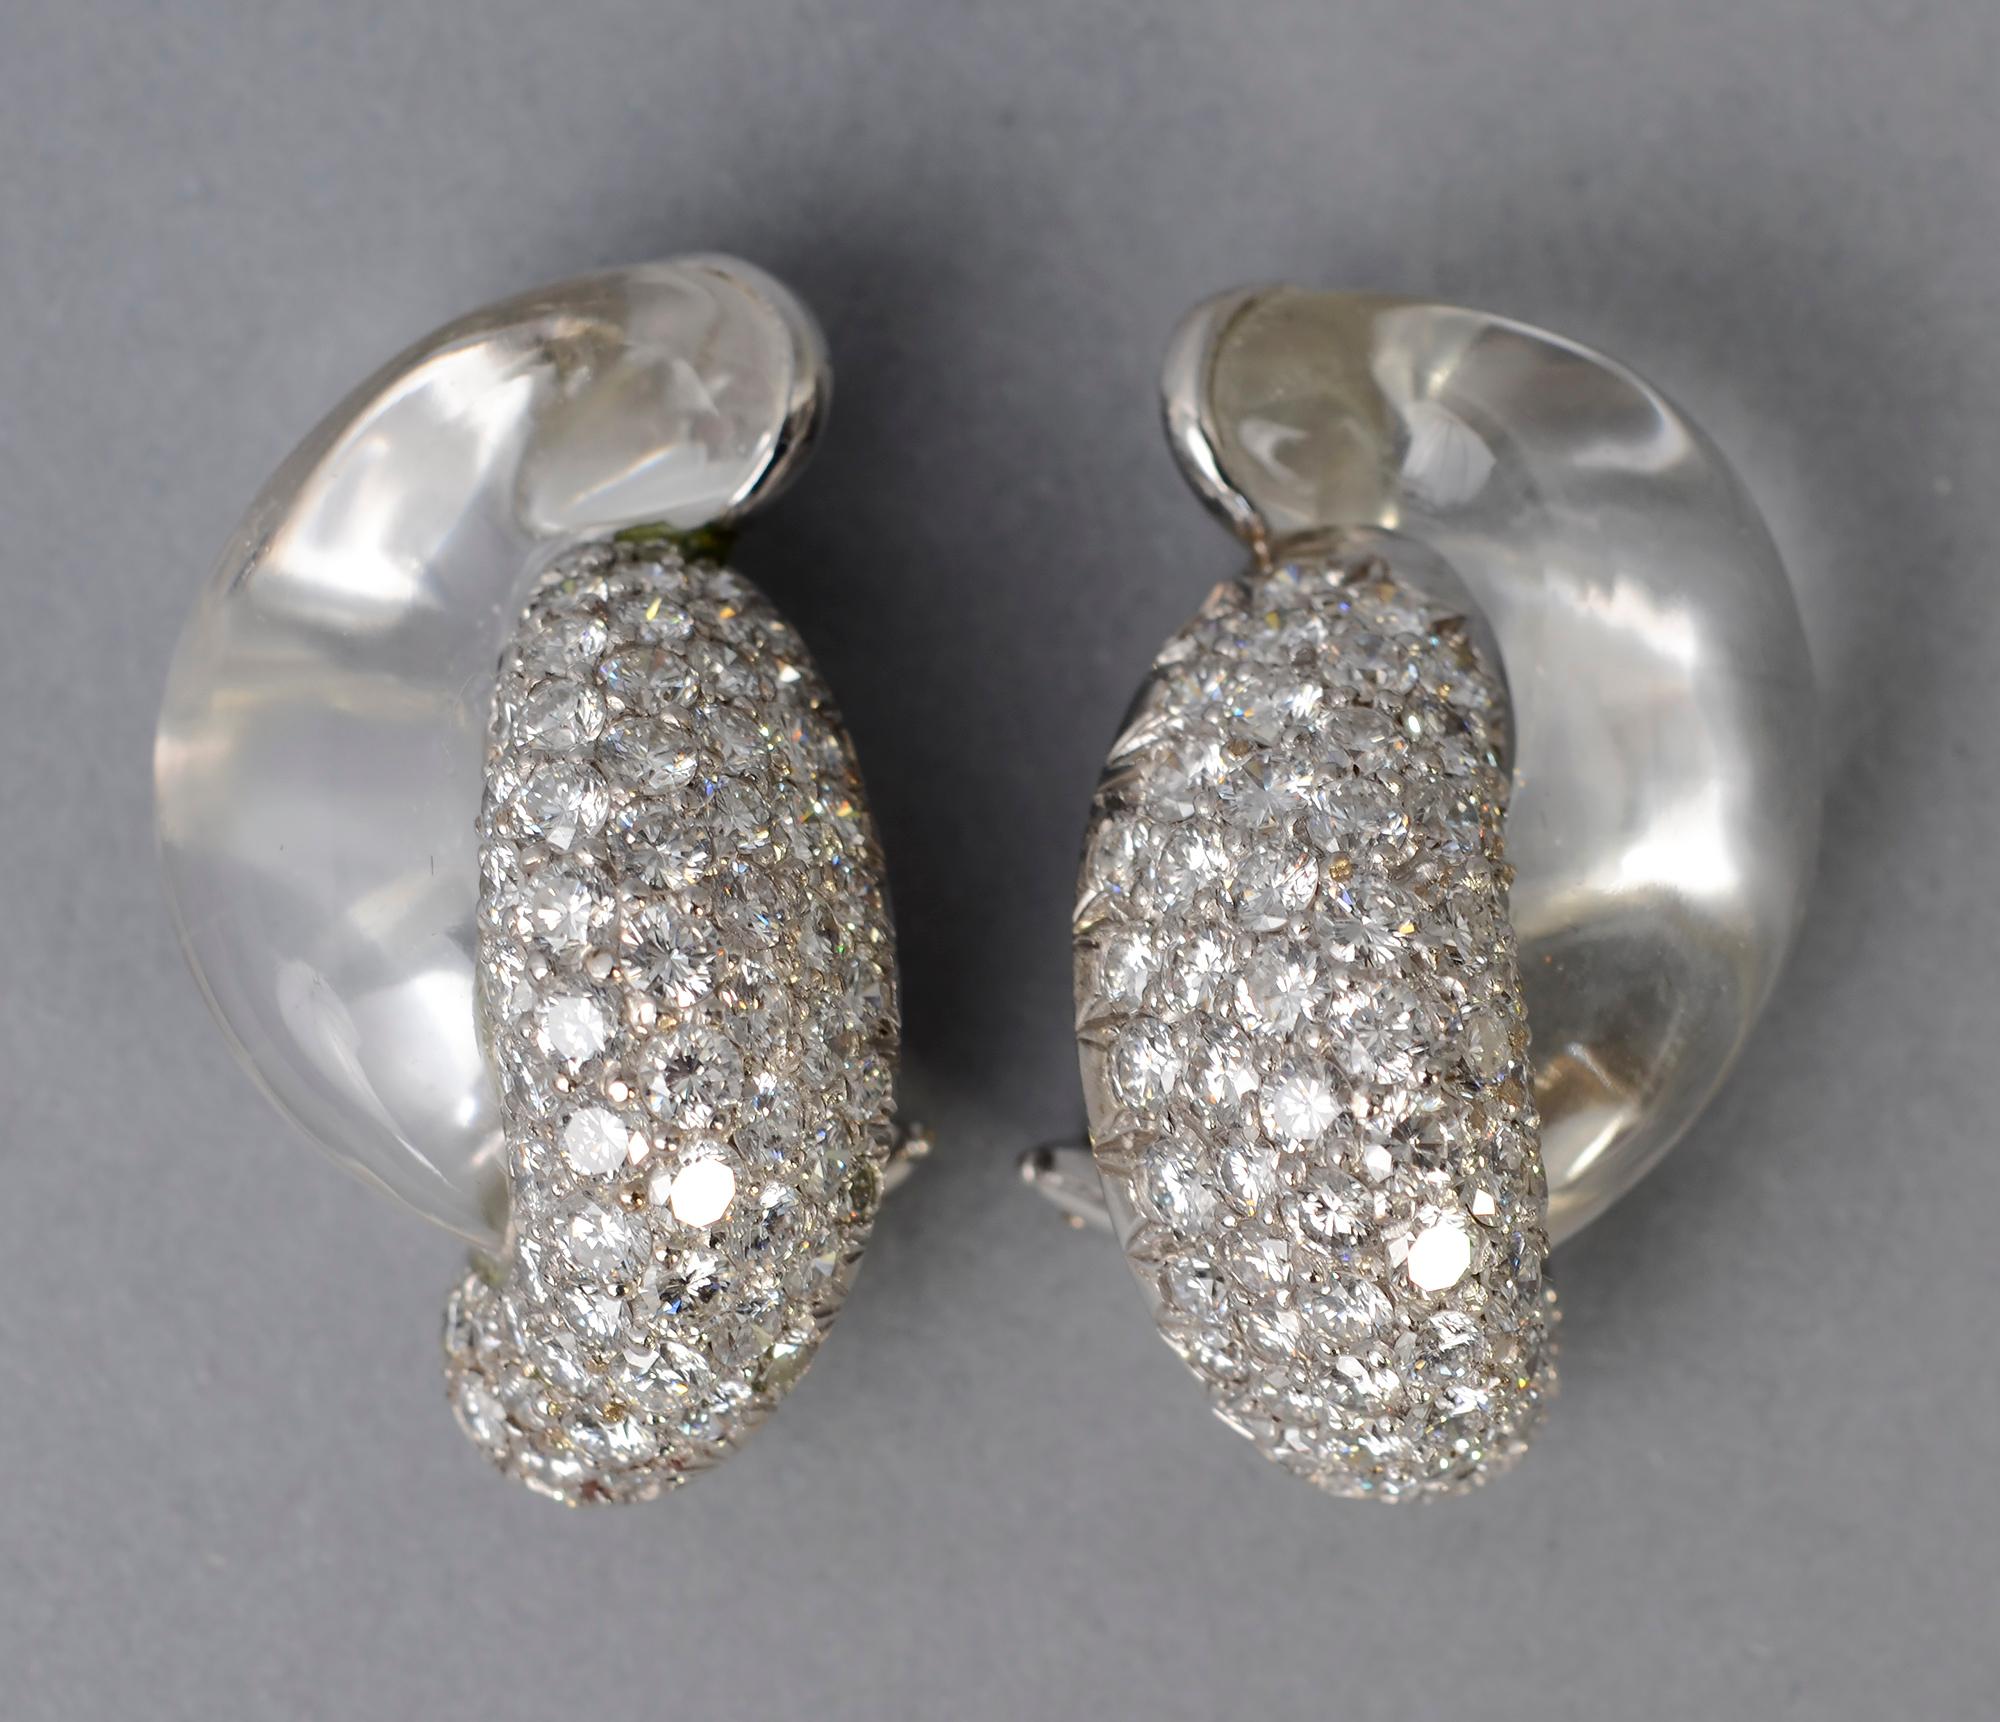 Exquisite klassische Seaman Schepps Ohrringe aus Diamanten und Bergkristall. Sie sind in 18 Karat Weißgold gefasst. Clip-Rückwände können leicht in Pfosten umgewandelt werden.
Signiert und nummeriert. Schepps bietet diese Ohrringe derzeit für 21.500